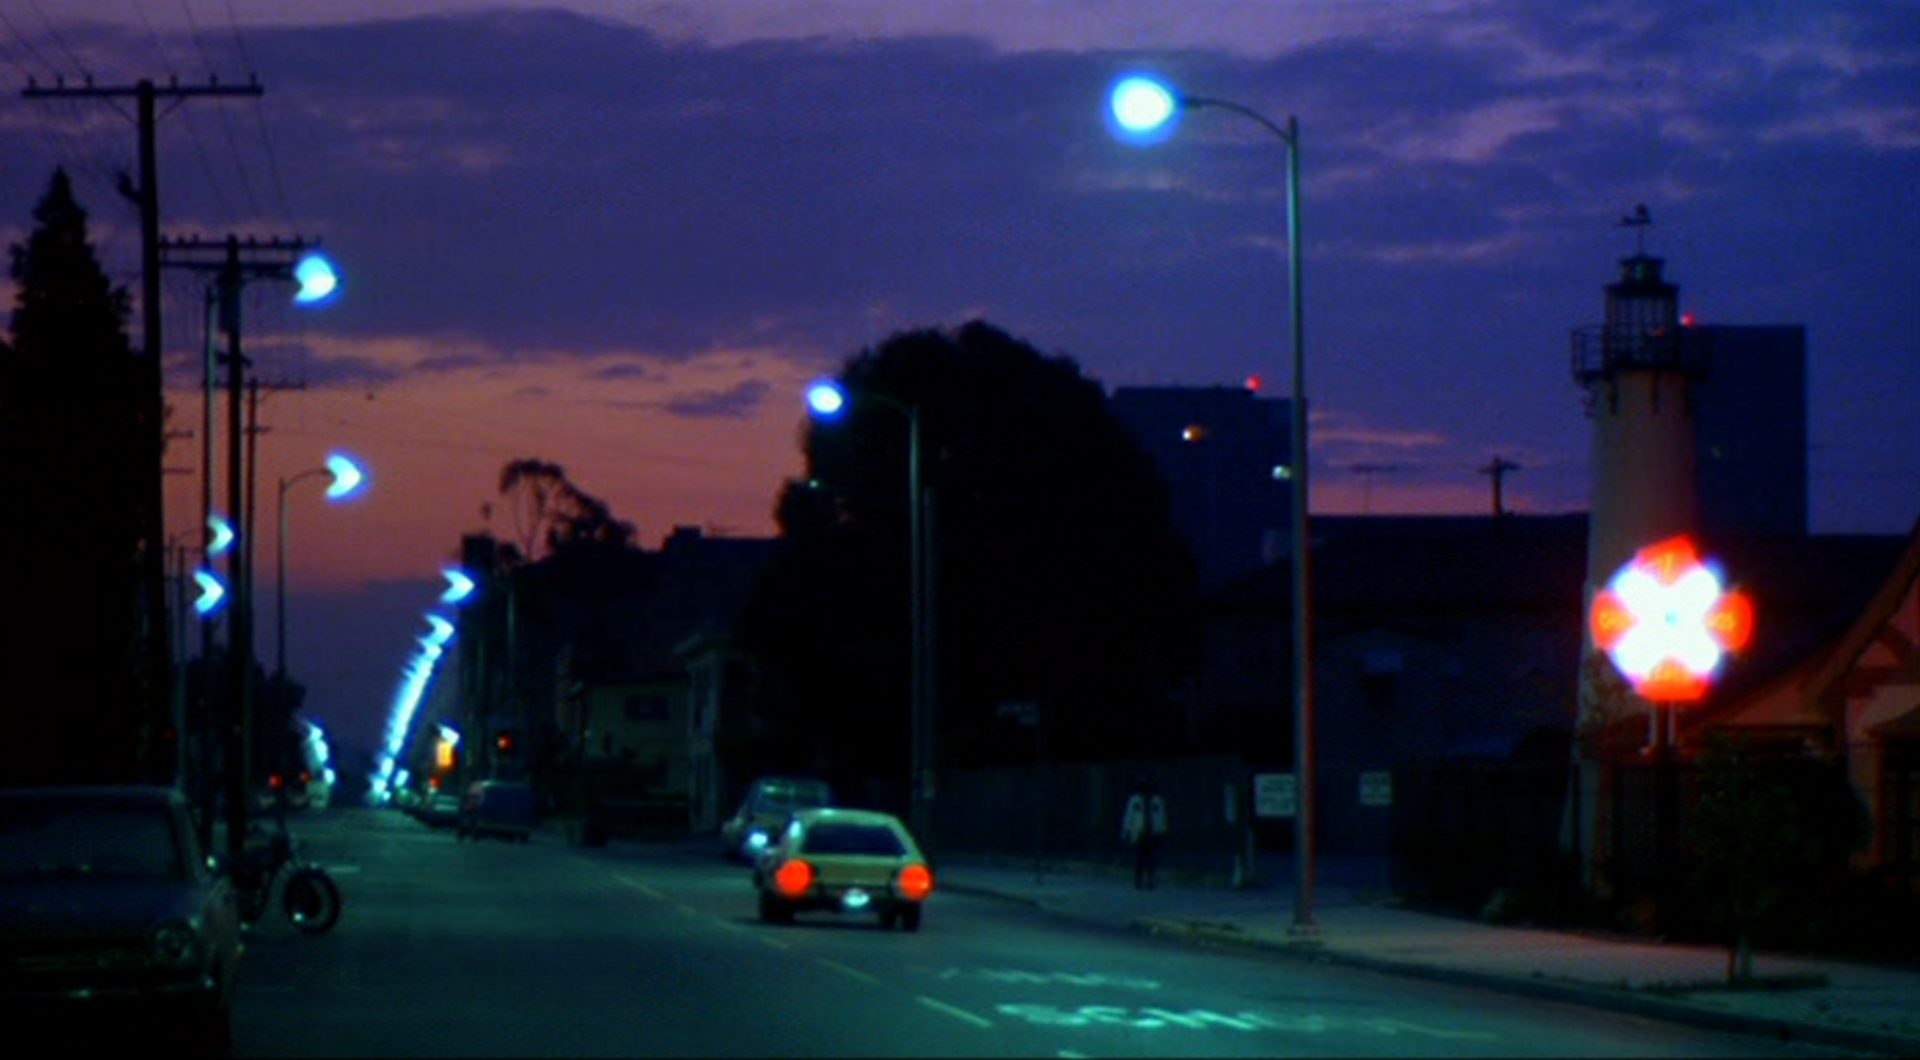 Nachtaufnahme eines Straßenzuges mit hellen Laternen.